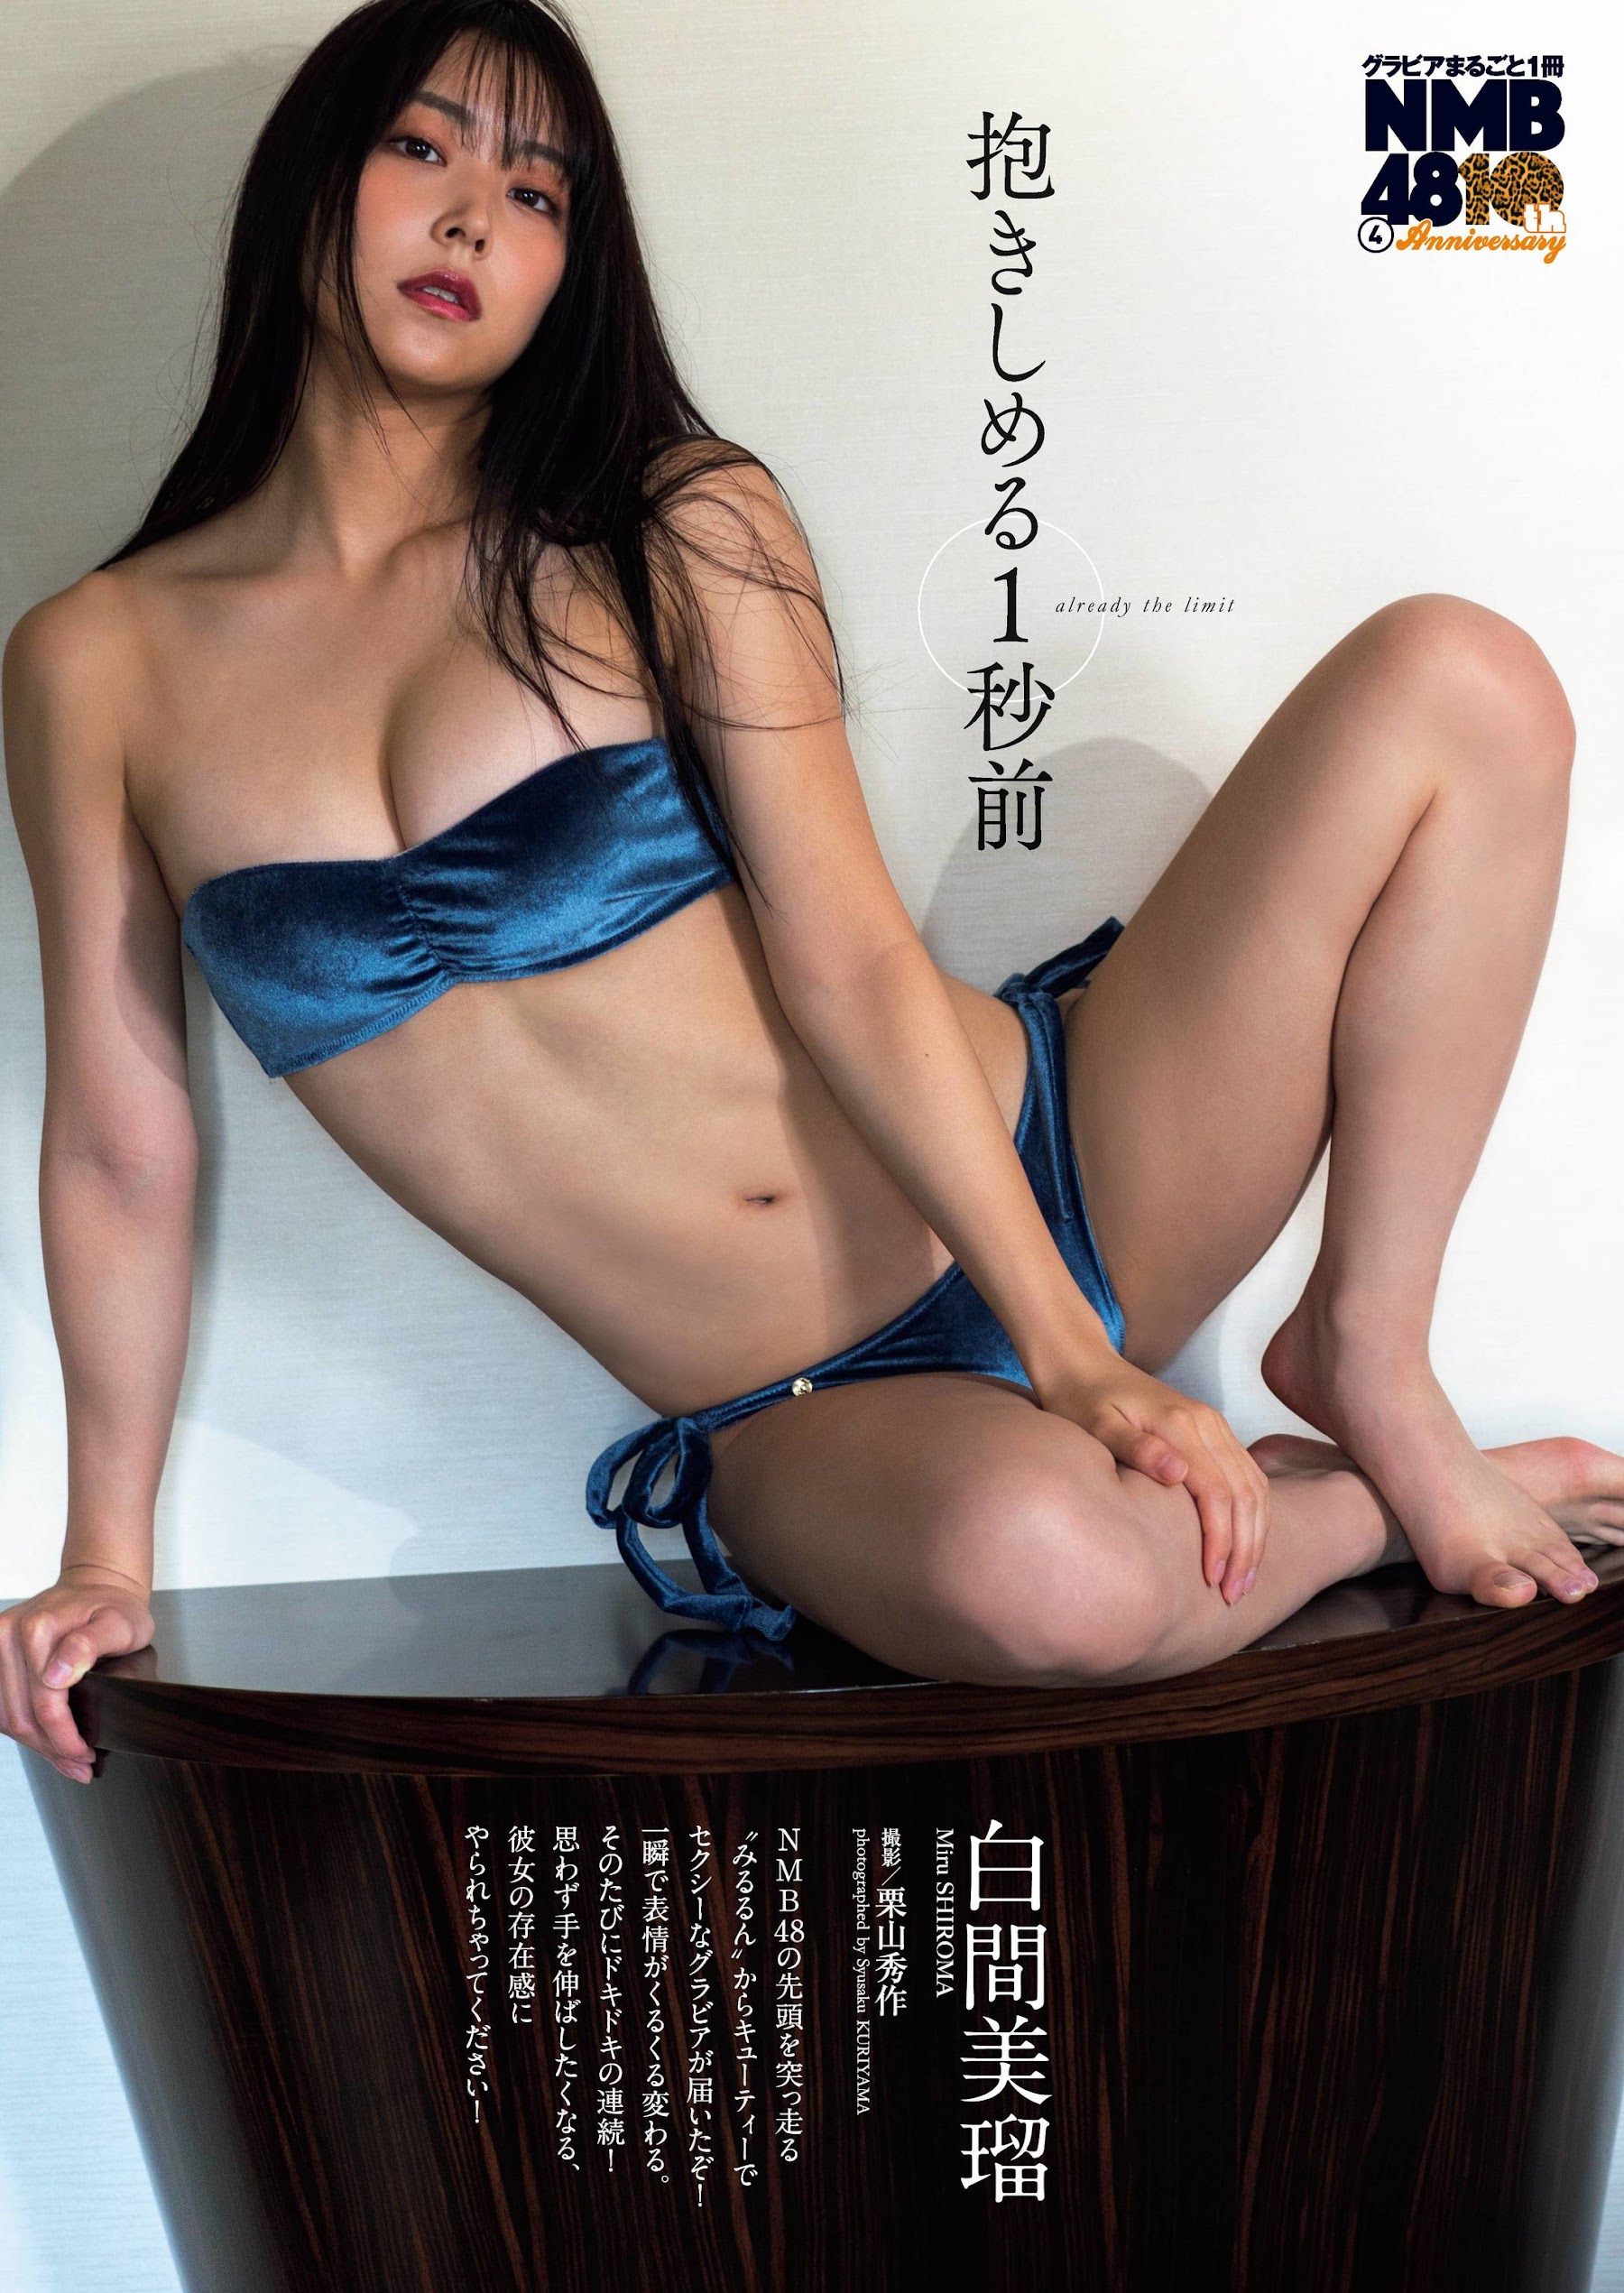 Weekly Playboy 2020.12.07 No.49 NMB48 白間美瑠 抱きしめる１秒前 